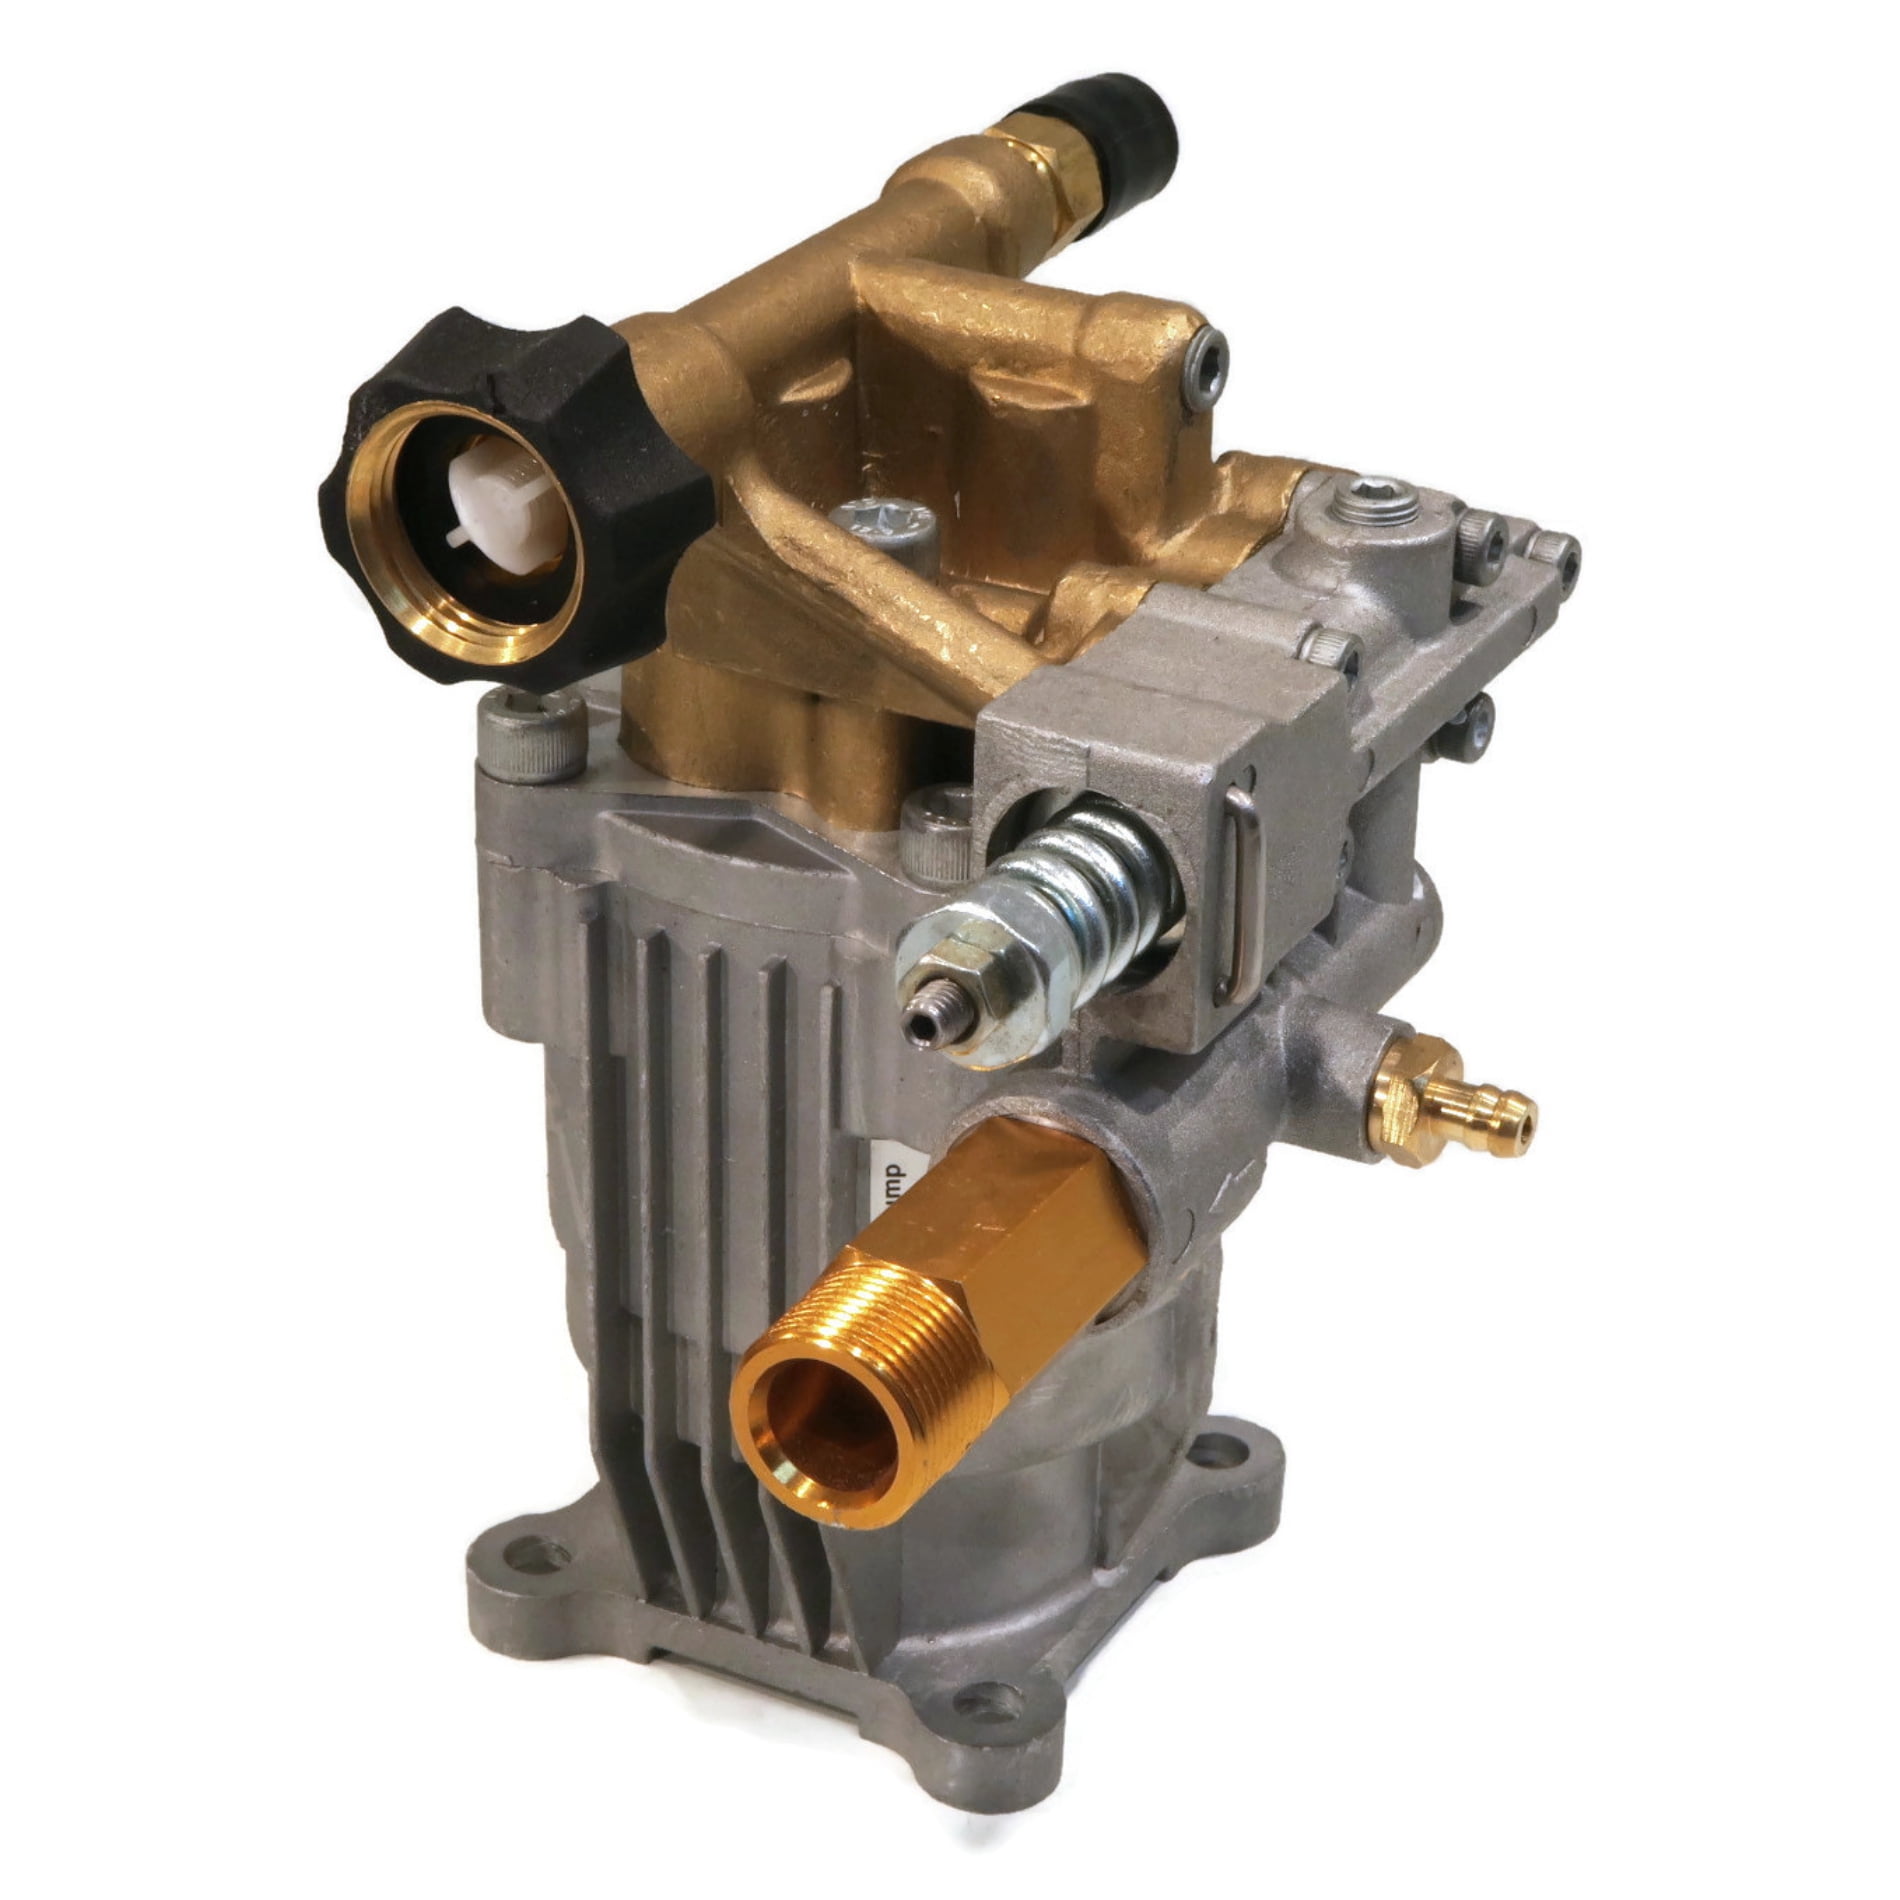 ANNOVI REVERBERI Pressure Washer Pump 2600psi 2.7 GPM for sale online 